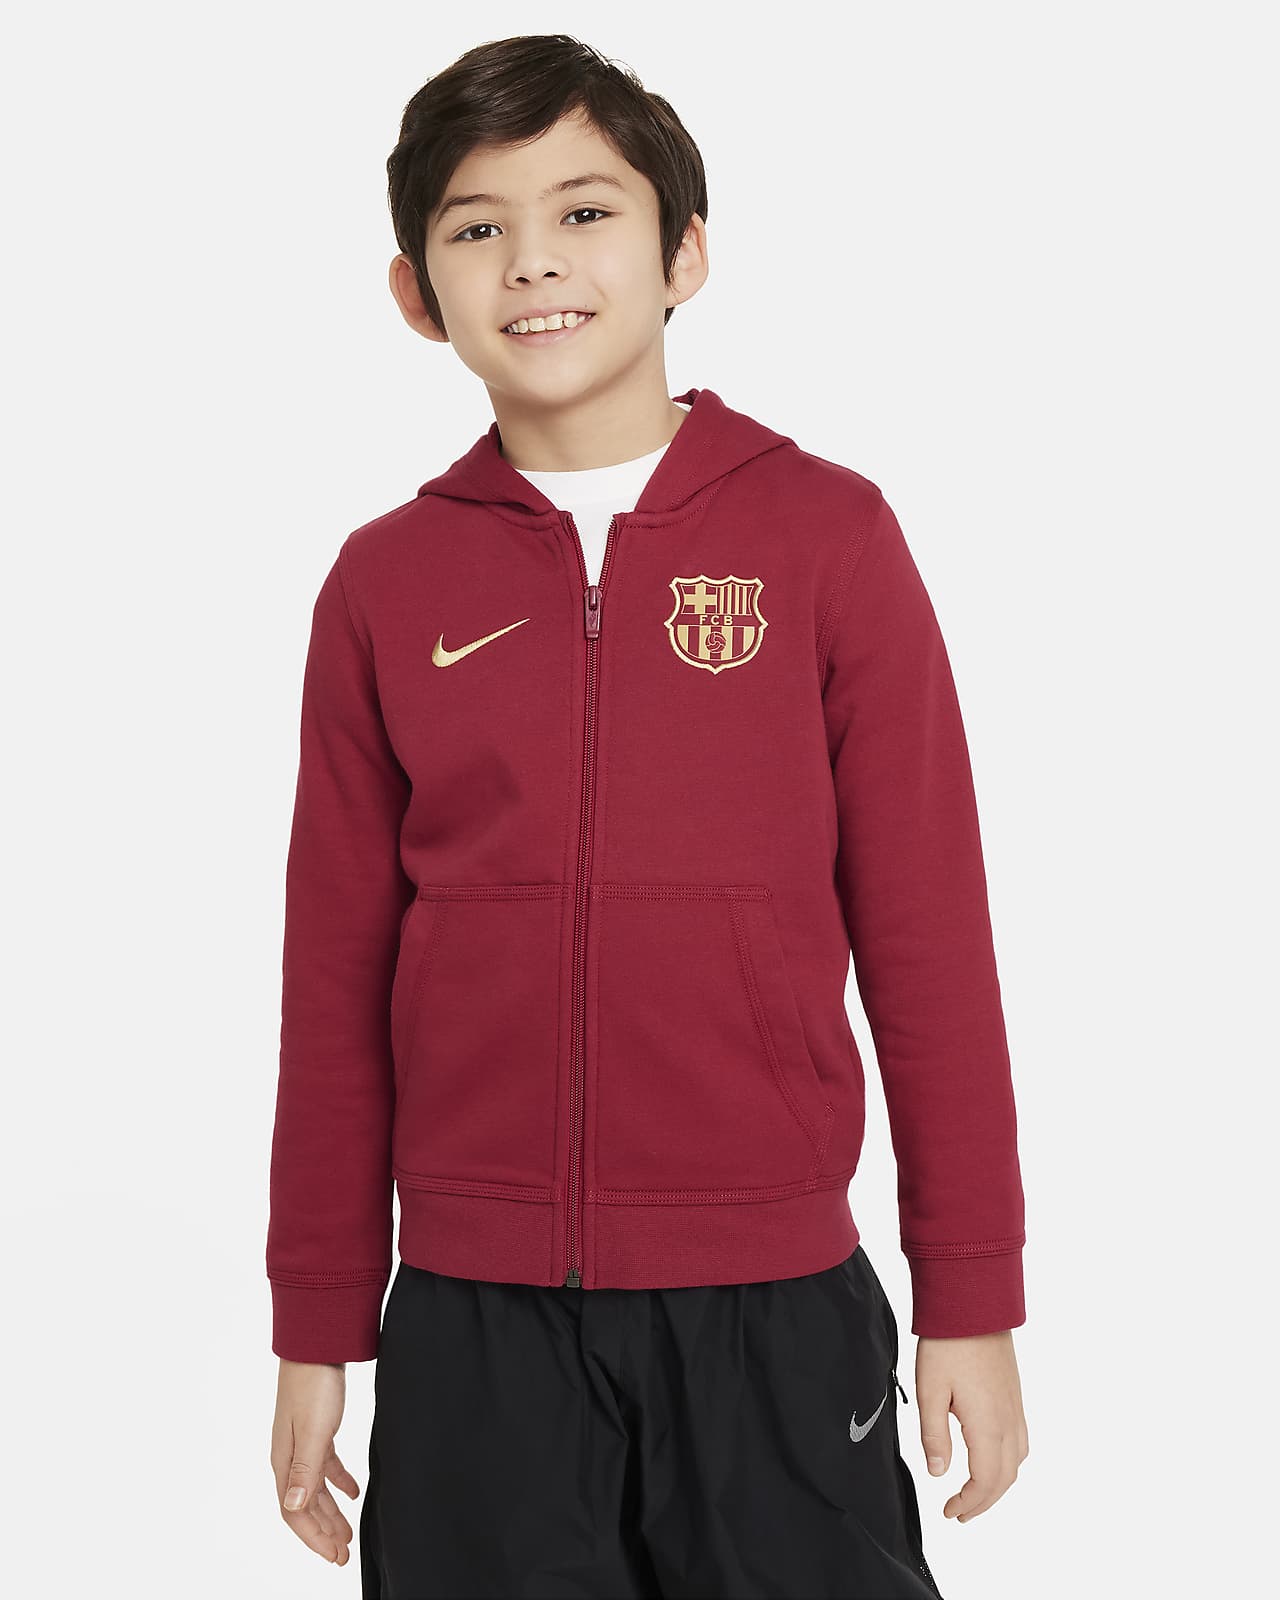 F.C. Barcelona Club Older Kids' (Boys') Nike Football Full-Zip Hoodie